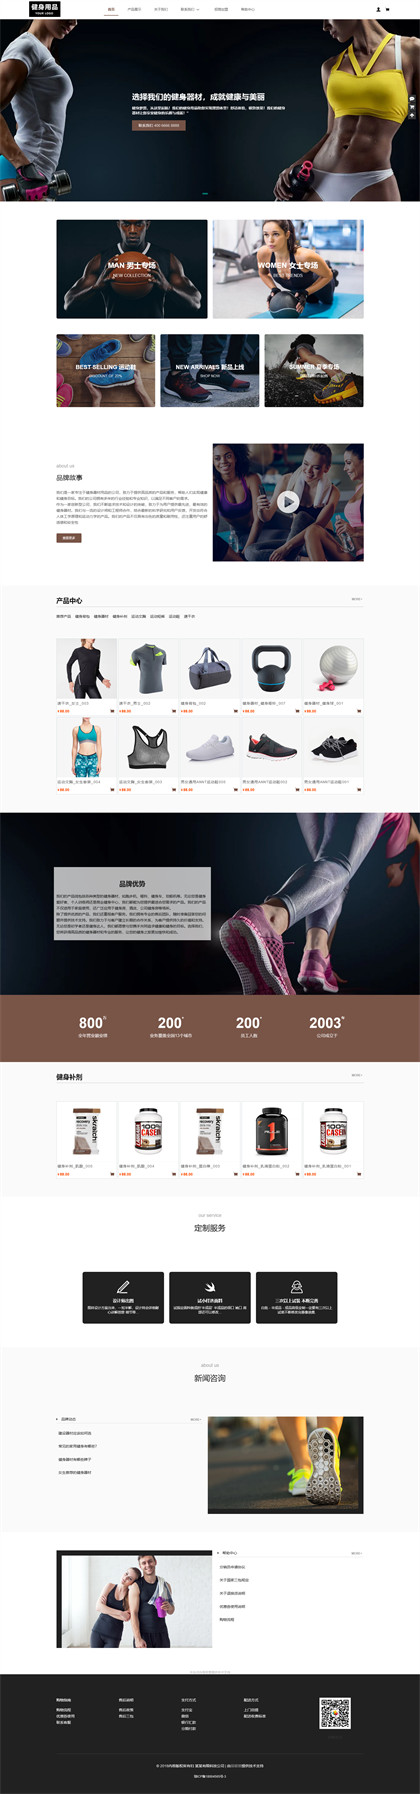 健身器材-健身用品-健身设备-运动用品-运动器材商城网站模板网站模板图片